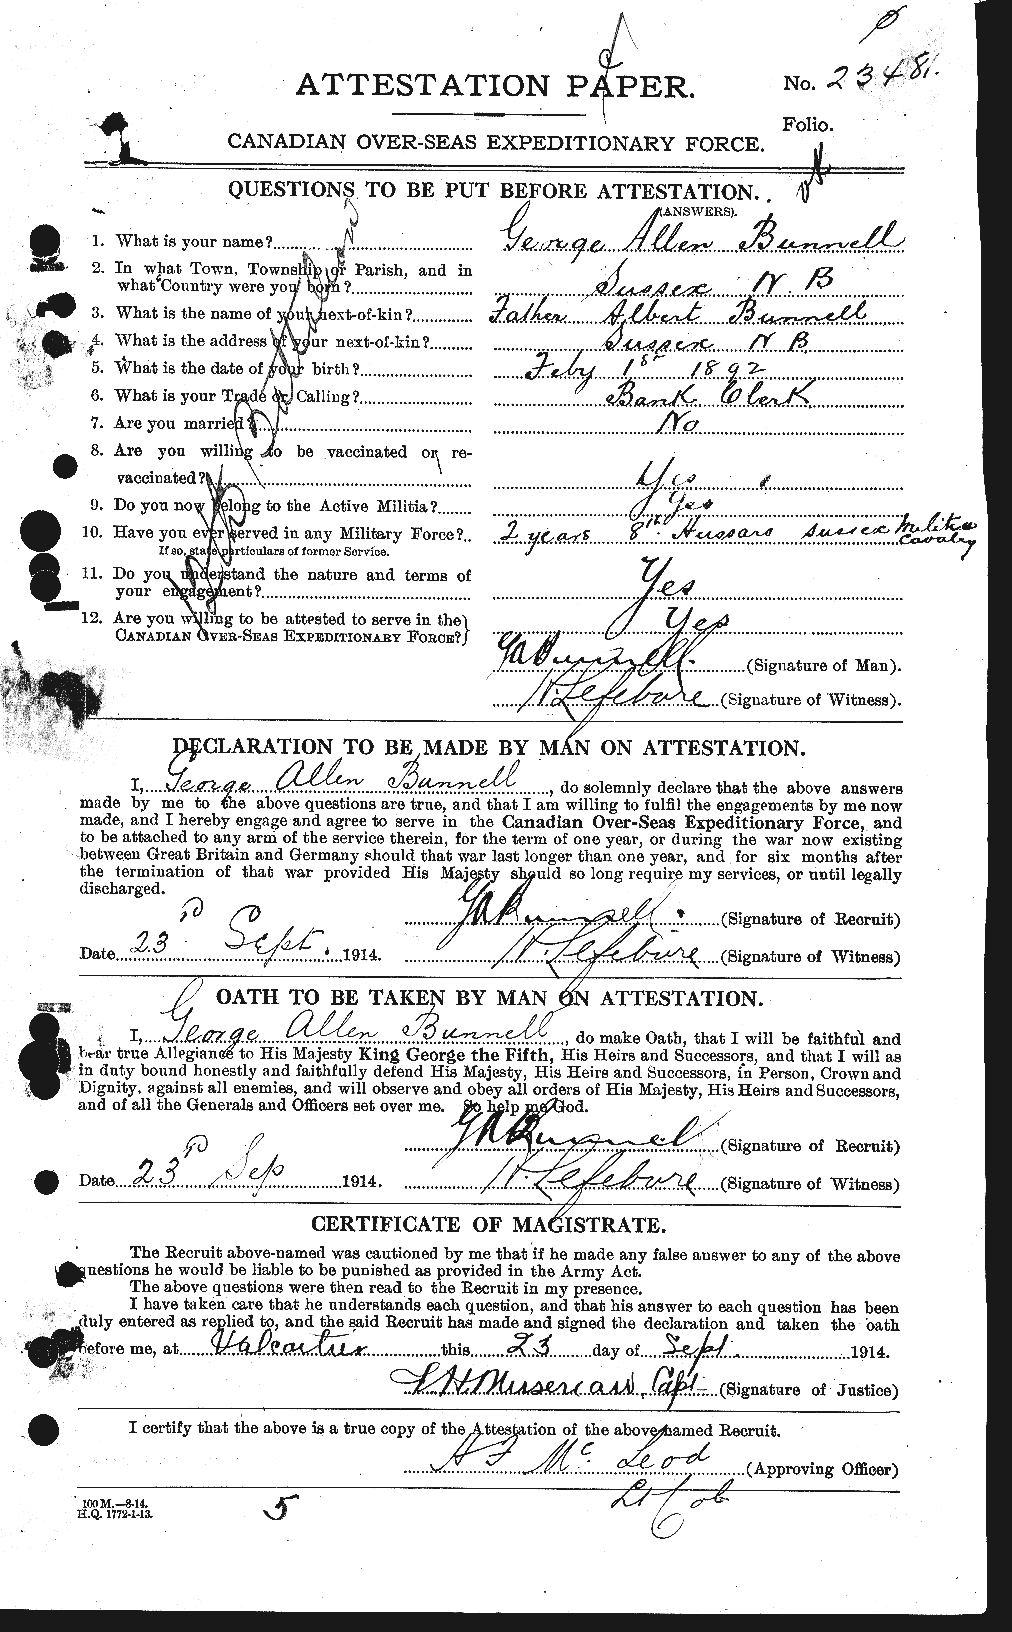 Dossiers du Personnel de la Première Guerre mondiale - CEC 270444a